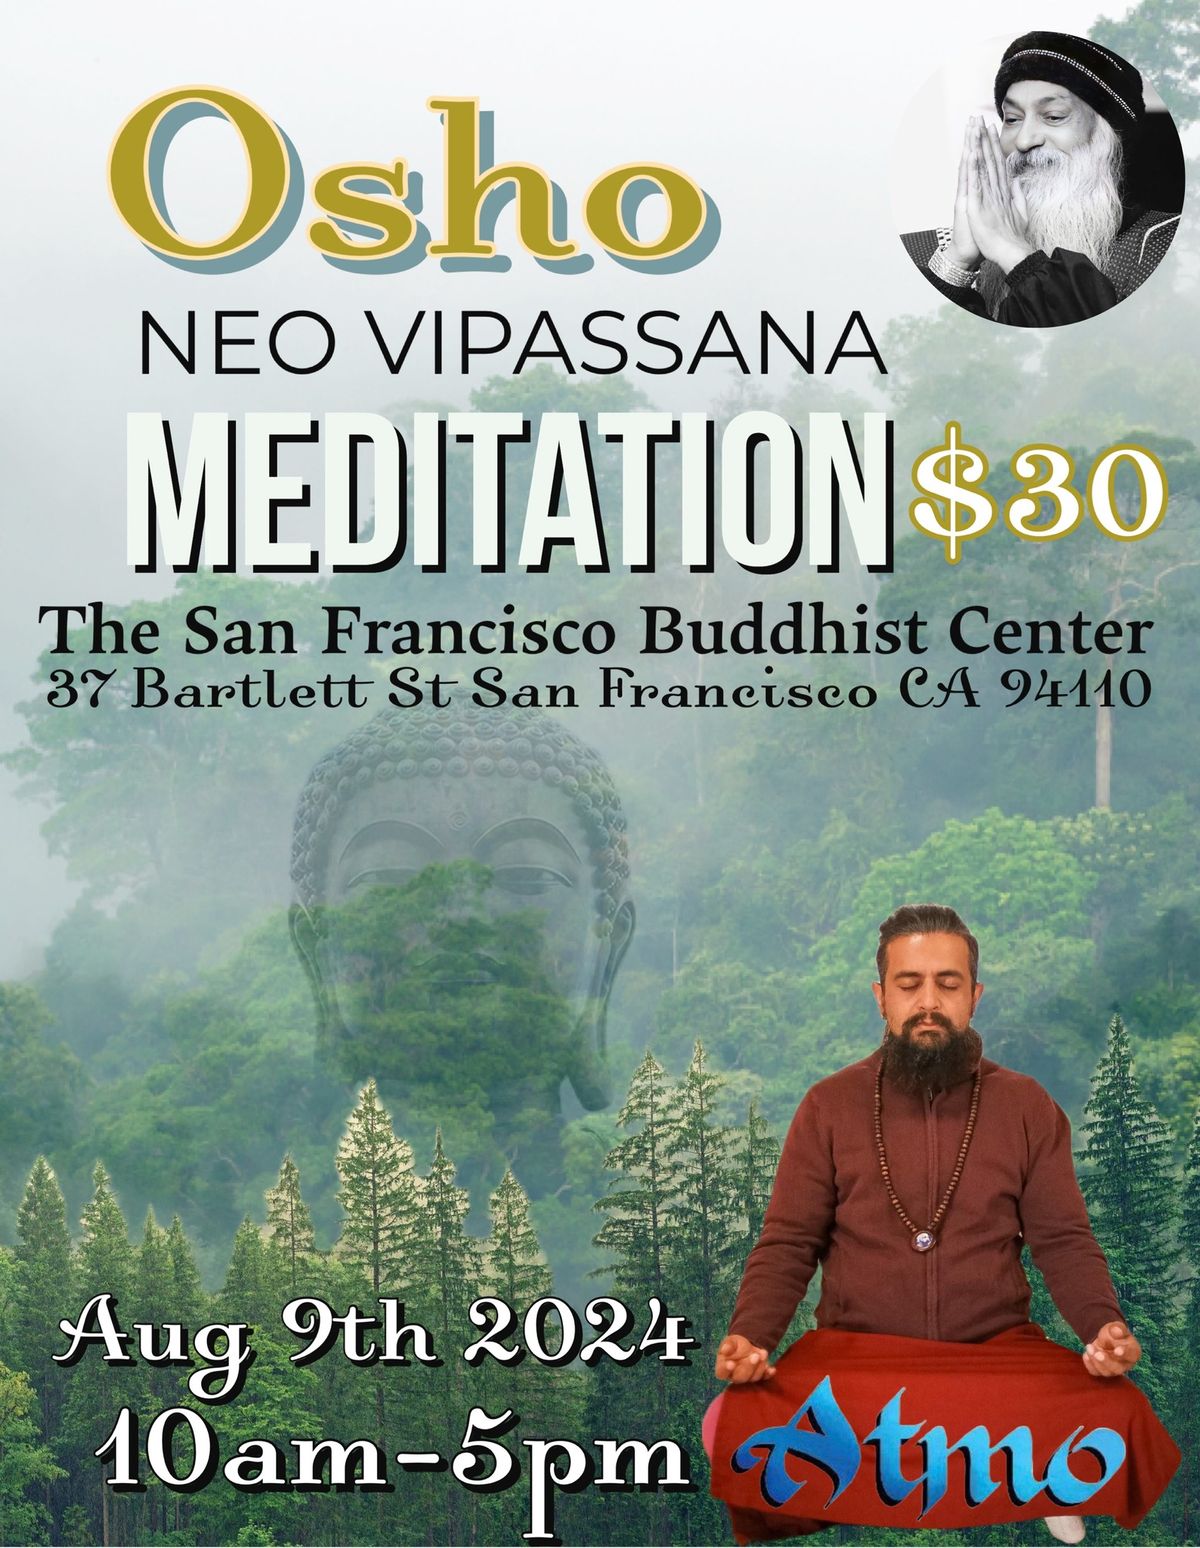 Osho New Vipassana with Atmo at The San Francisco Buddhist Center.